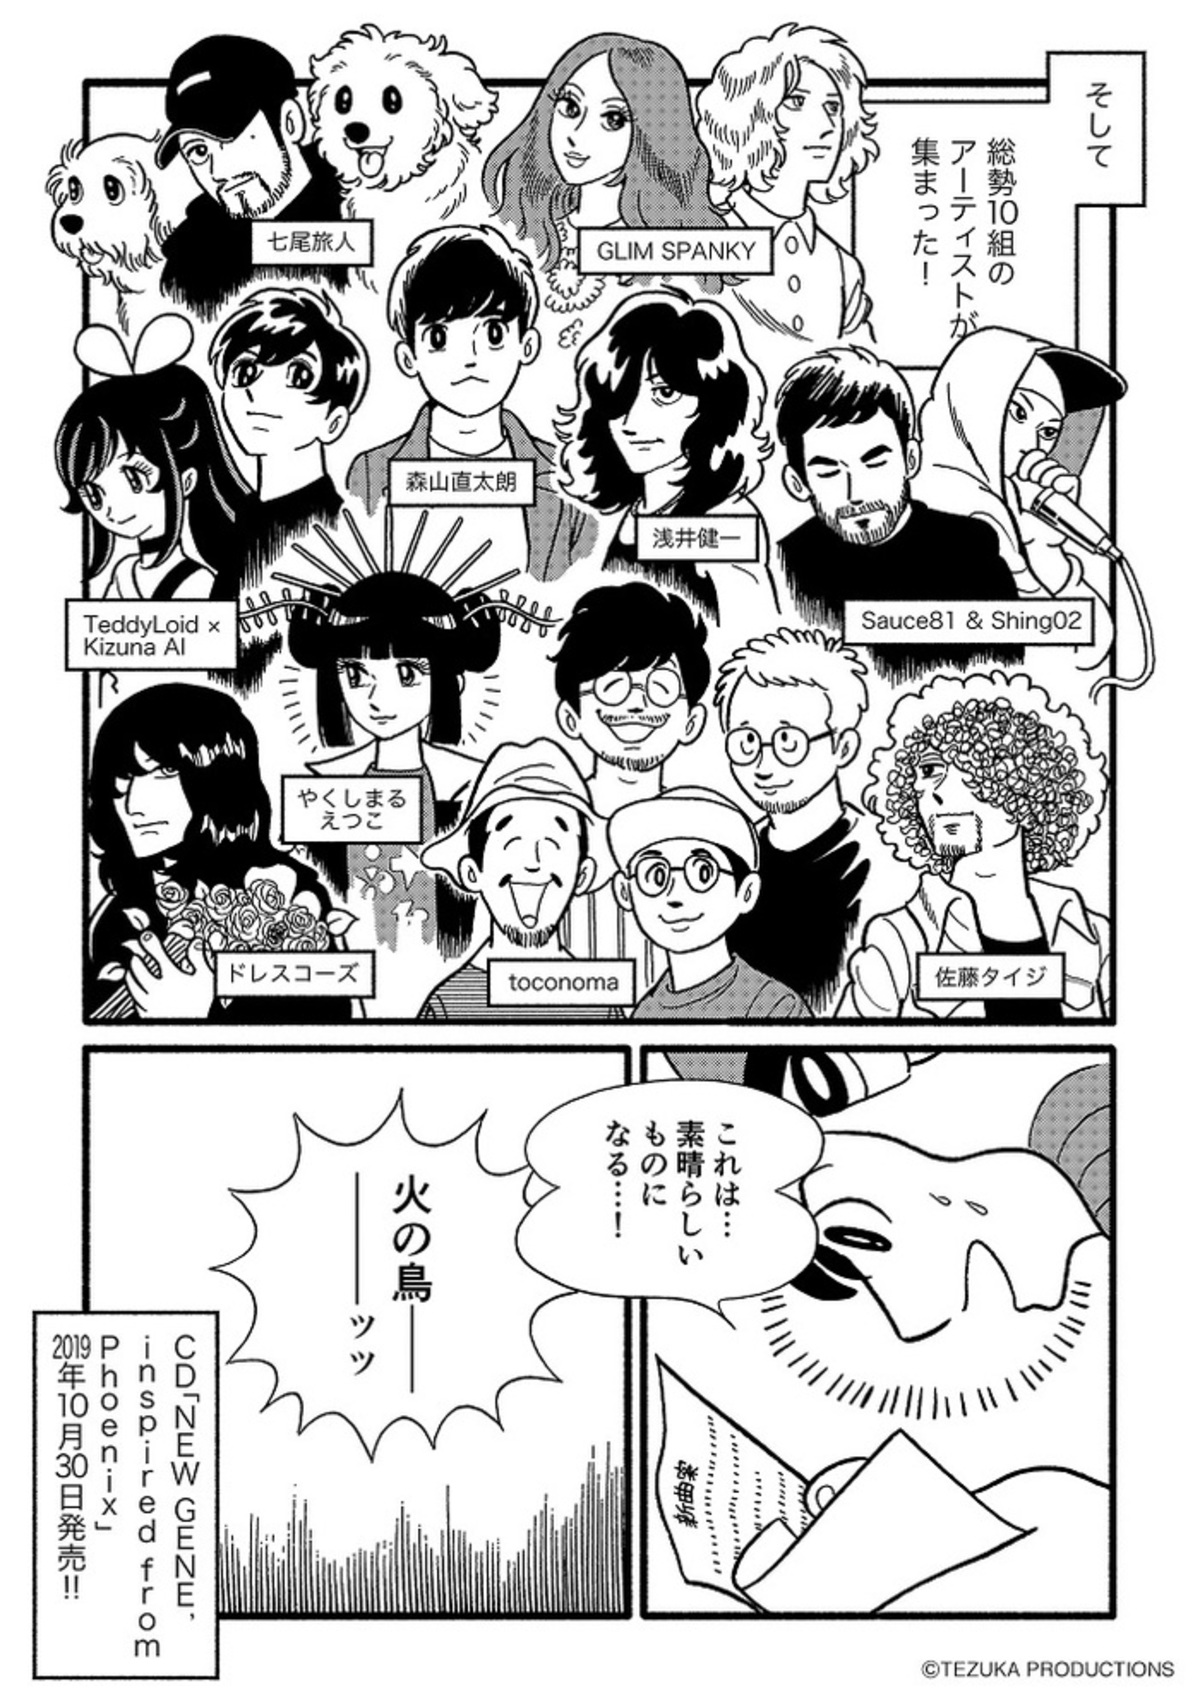 浅井健一、GLIM SPANKY、ドレスコーズ、やくしまるえつこ、七尾旅人ら参加。漫画